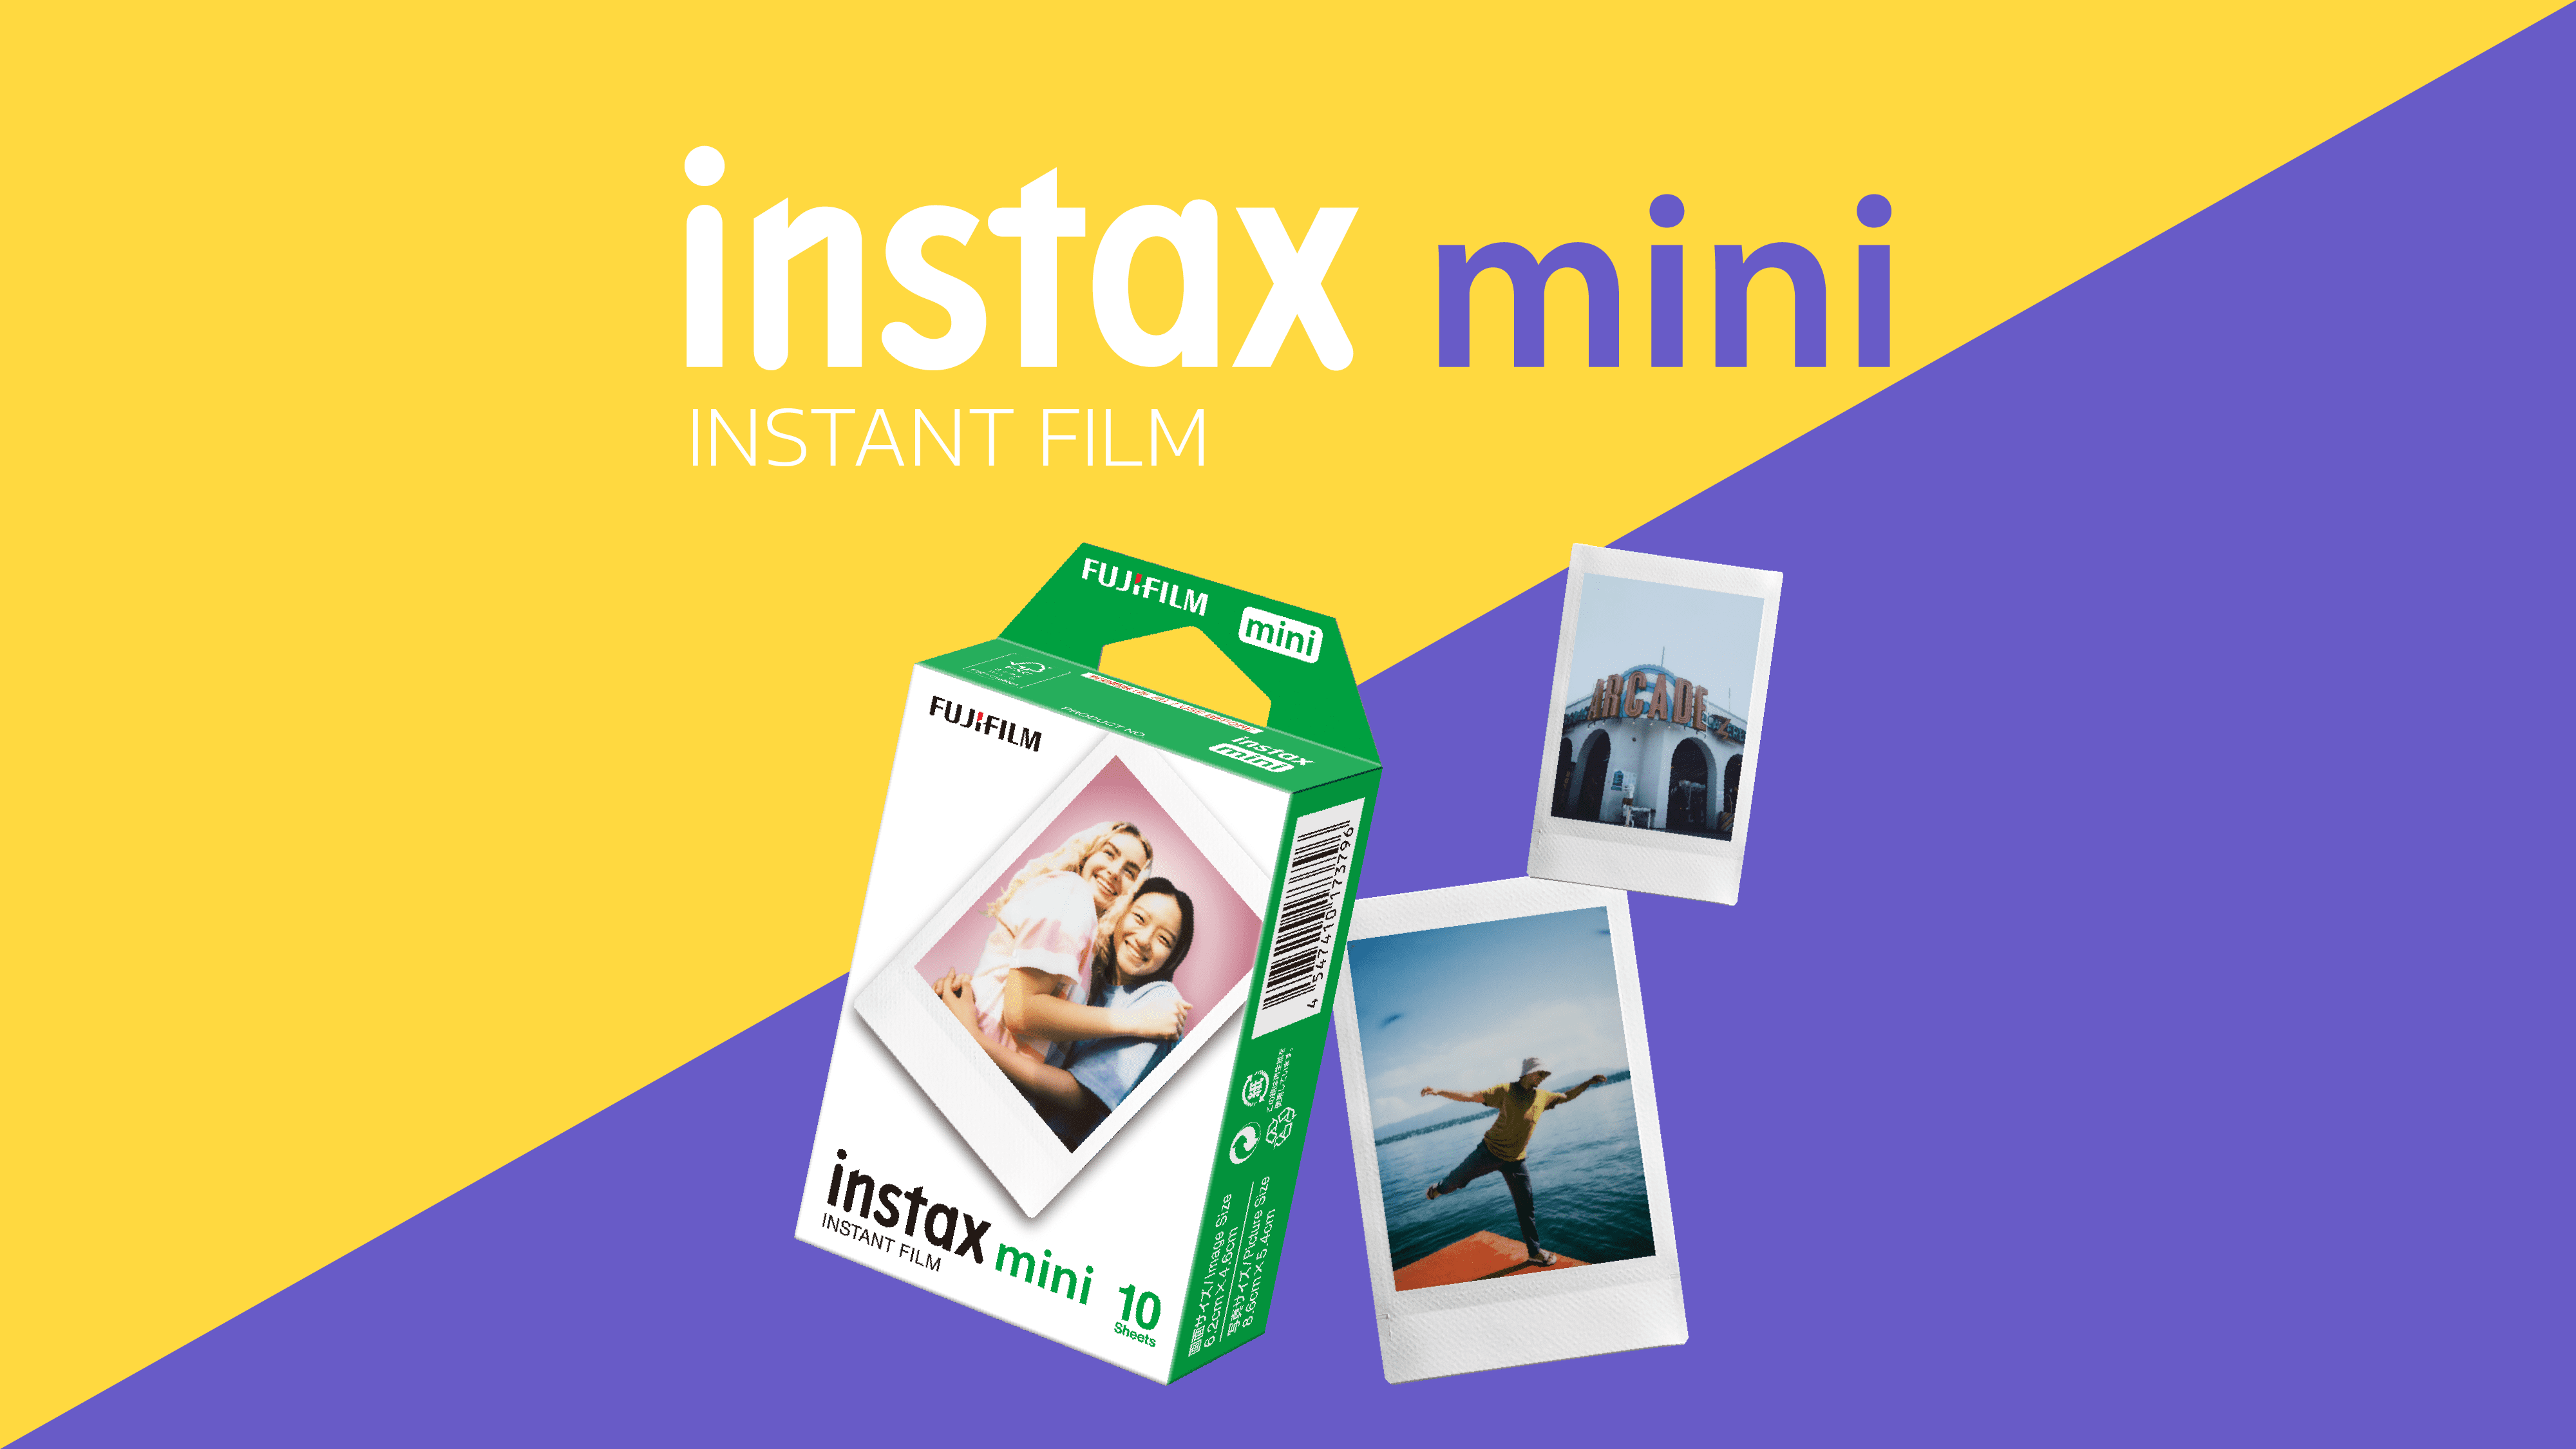 instax mini film ขอบขาว